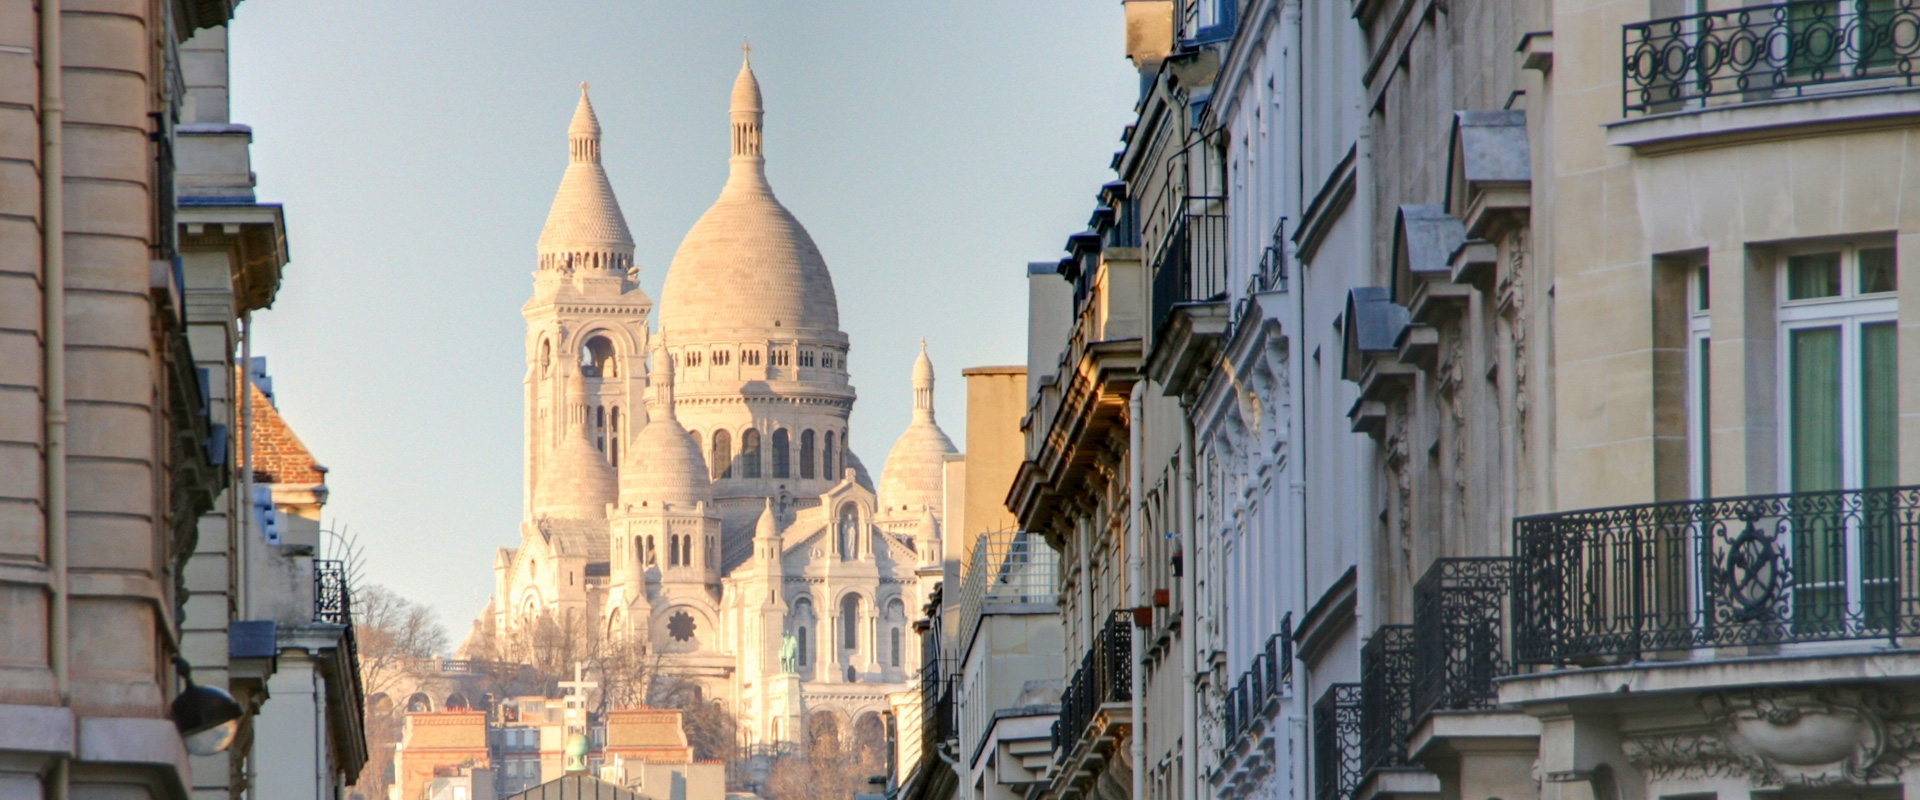 Sacre Coeur - Reise nach Paris